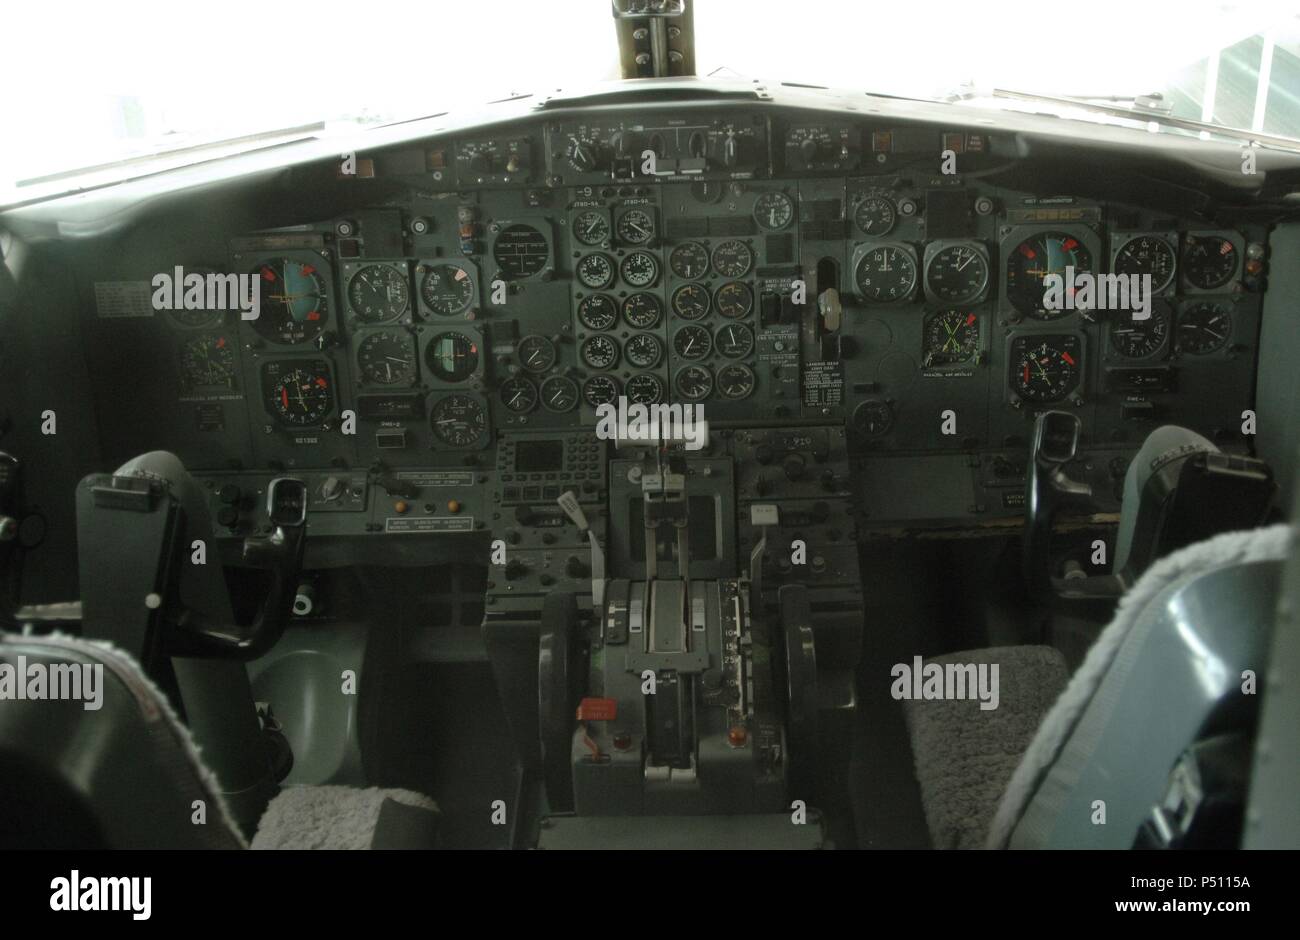 CABINA de control de un BOEING 737-201. Museo del Vuelo (Museum of Flight). Seattle. Estado de Washington. Estados Unidos. Stock Photo